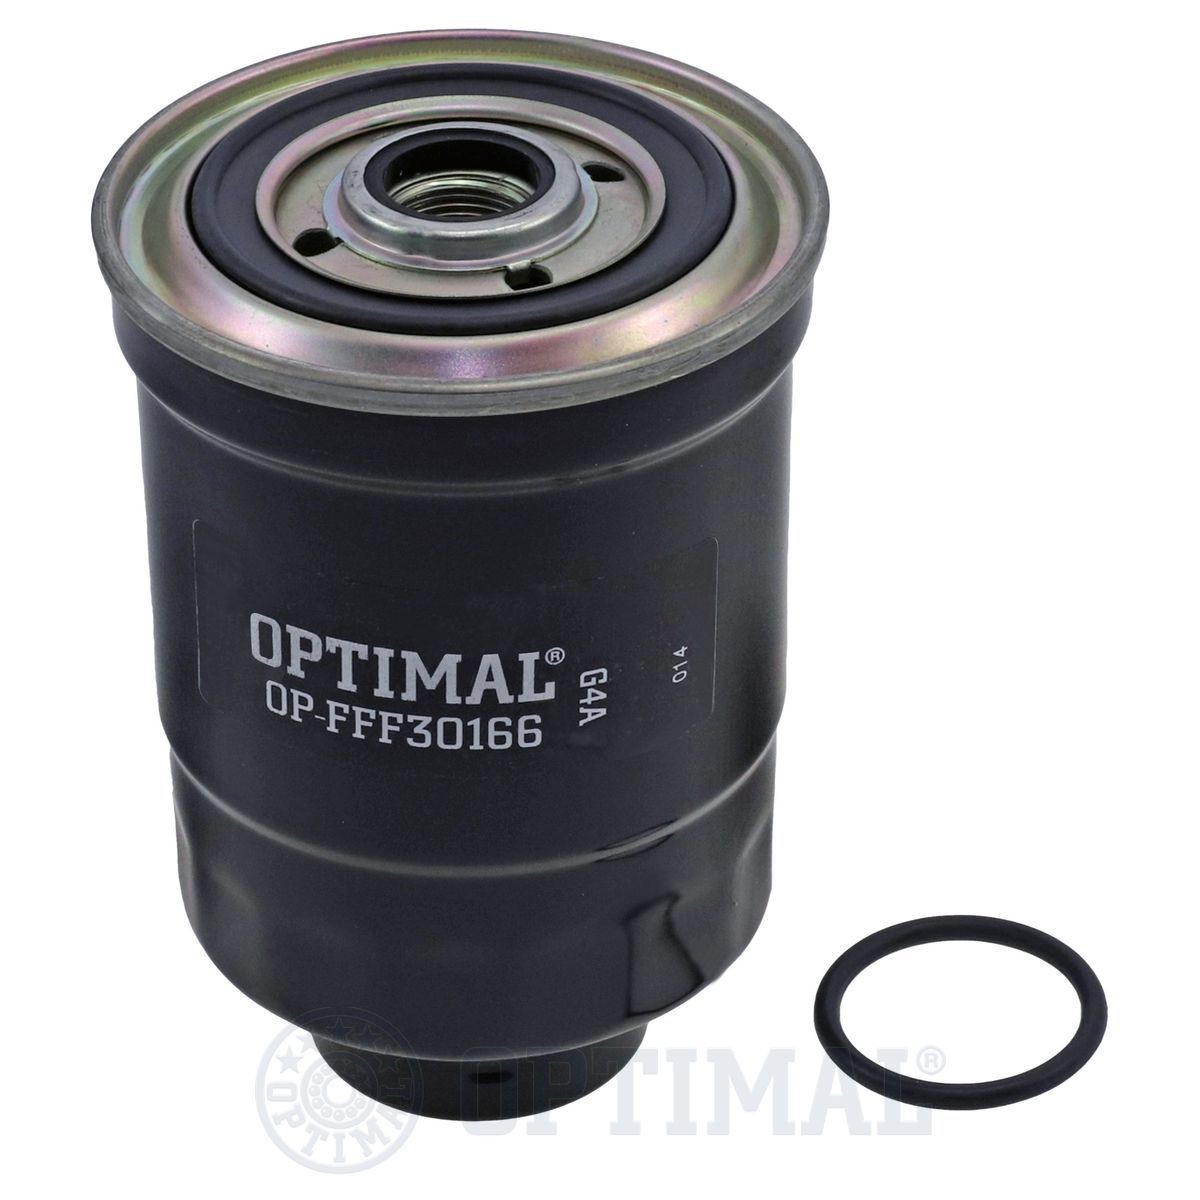 OPTIMAL OP-FFF30166 Fuel filter 8-94167398-0